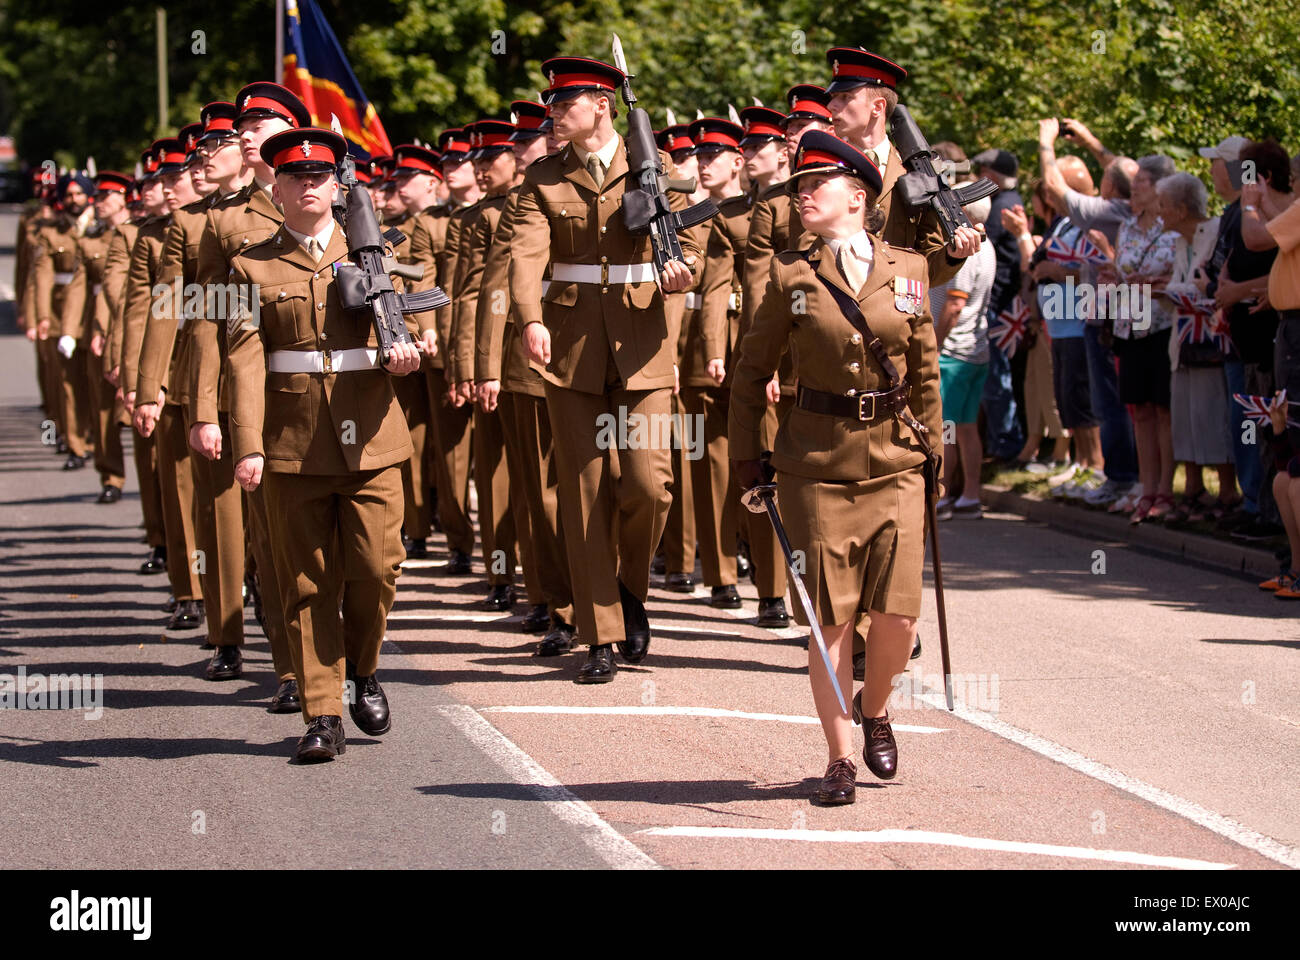 Abschied von der Garnison Festival, Bordon, Hampshire, UK. Samstag, 27. Juni 2015 (Armed Forces Day). Stockfoto